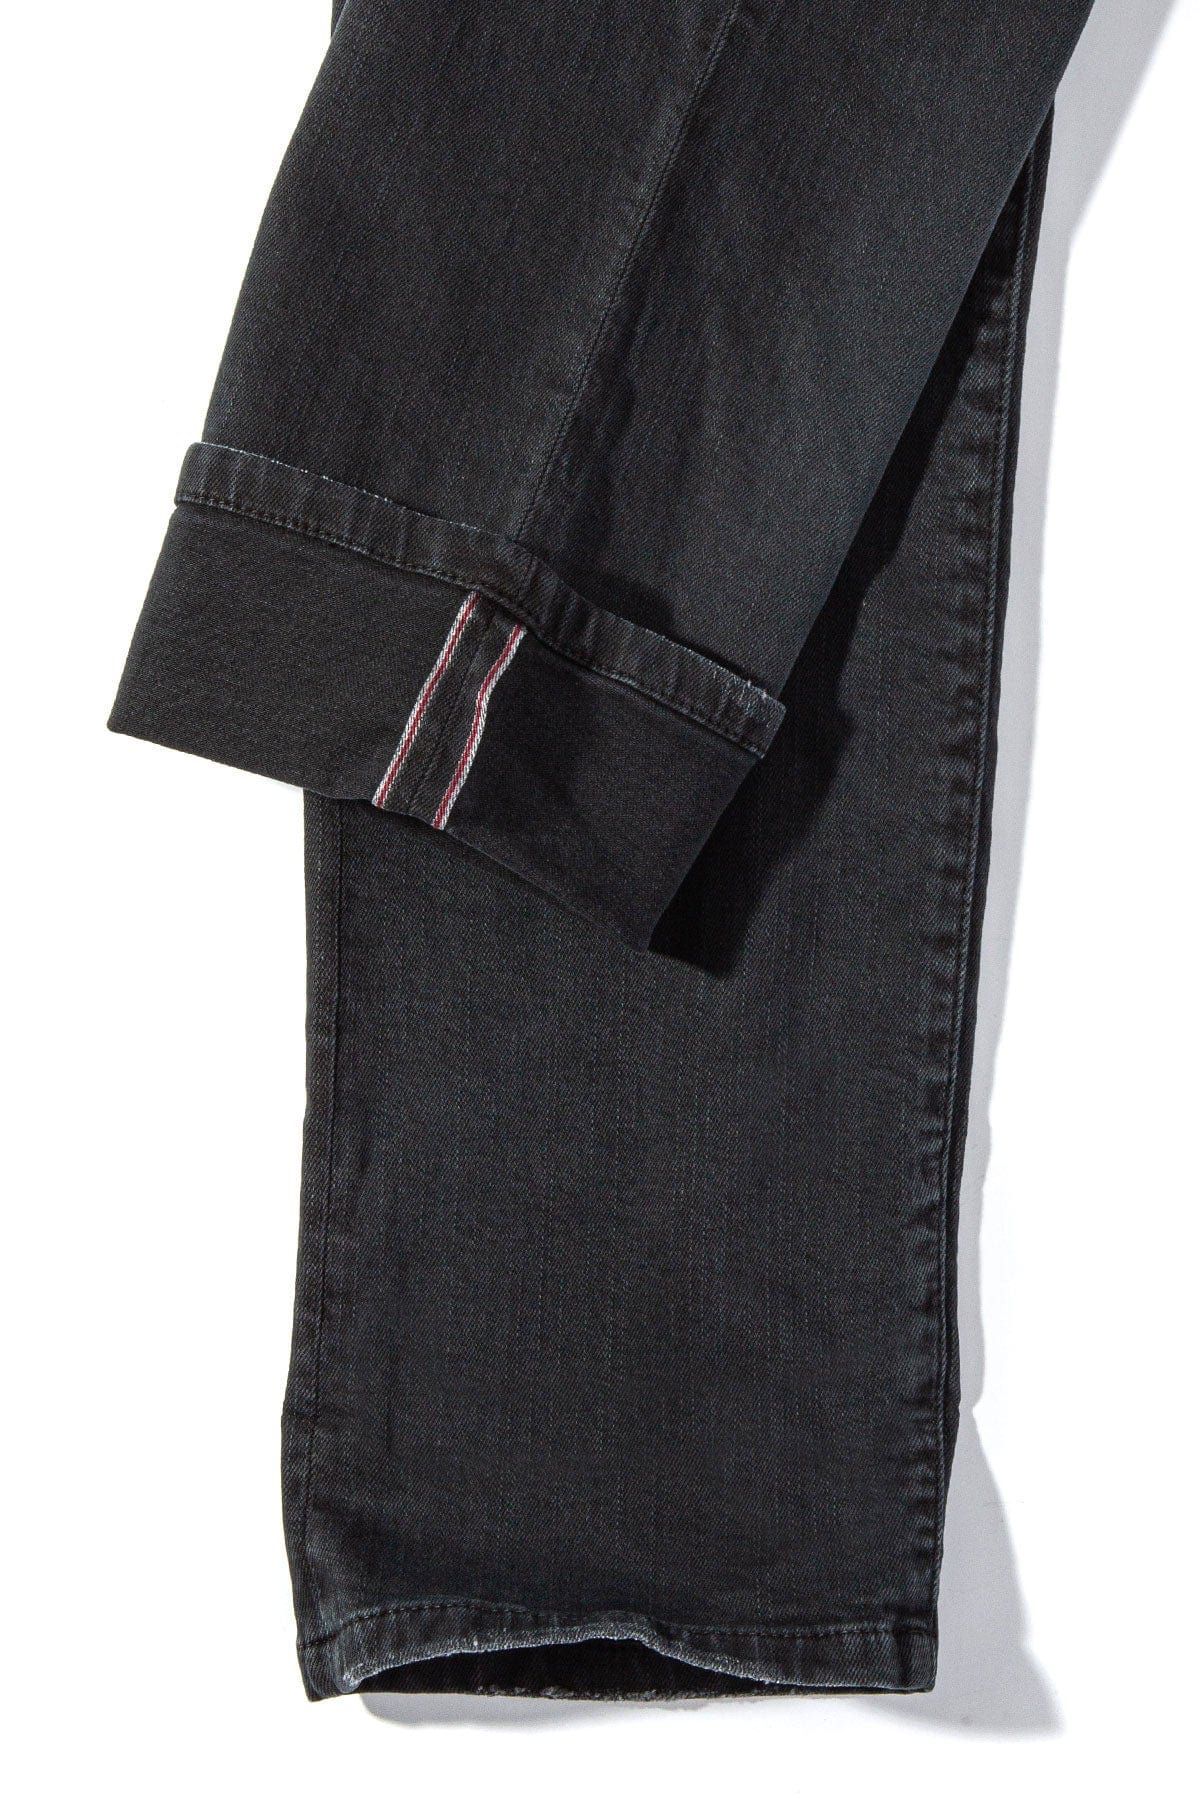 Buy Emporio Armani Denim Nero Regular Fit Jeans for Men Online @ Tata CLiQ  Luxury